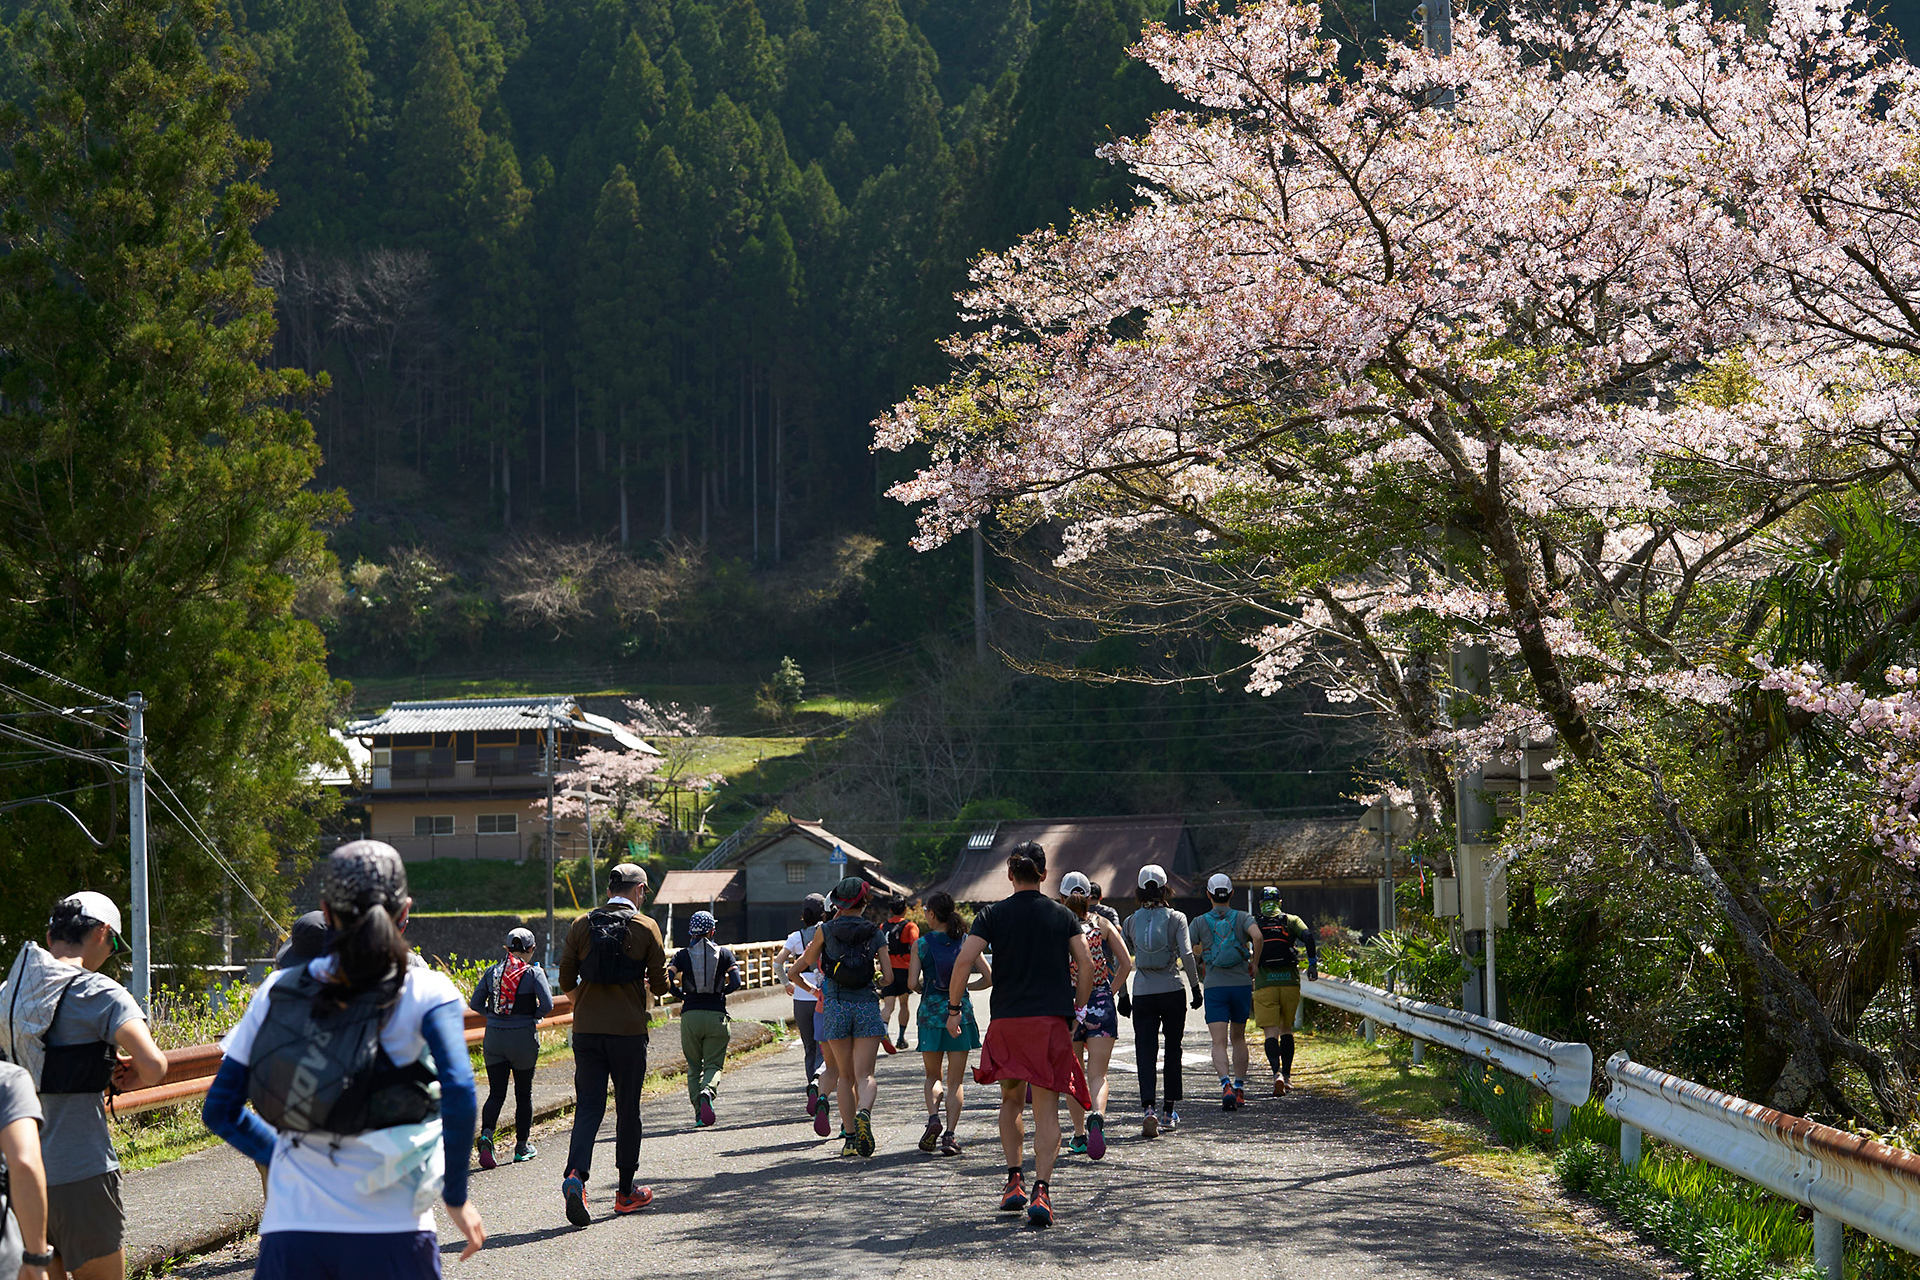 23 〜幻の熊野古道再生を目指す「奥辺路（おくへち）プロジェクト」とは〜 「トレイルランニングの半分はトレイルでできている」<br/>トレイルランナー・中川政寿